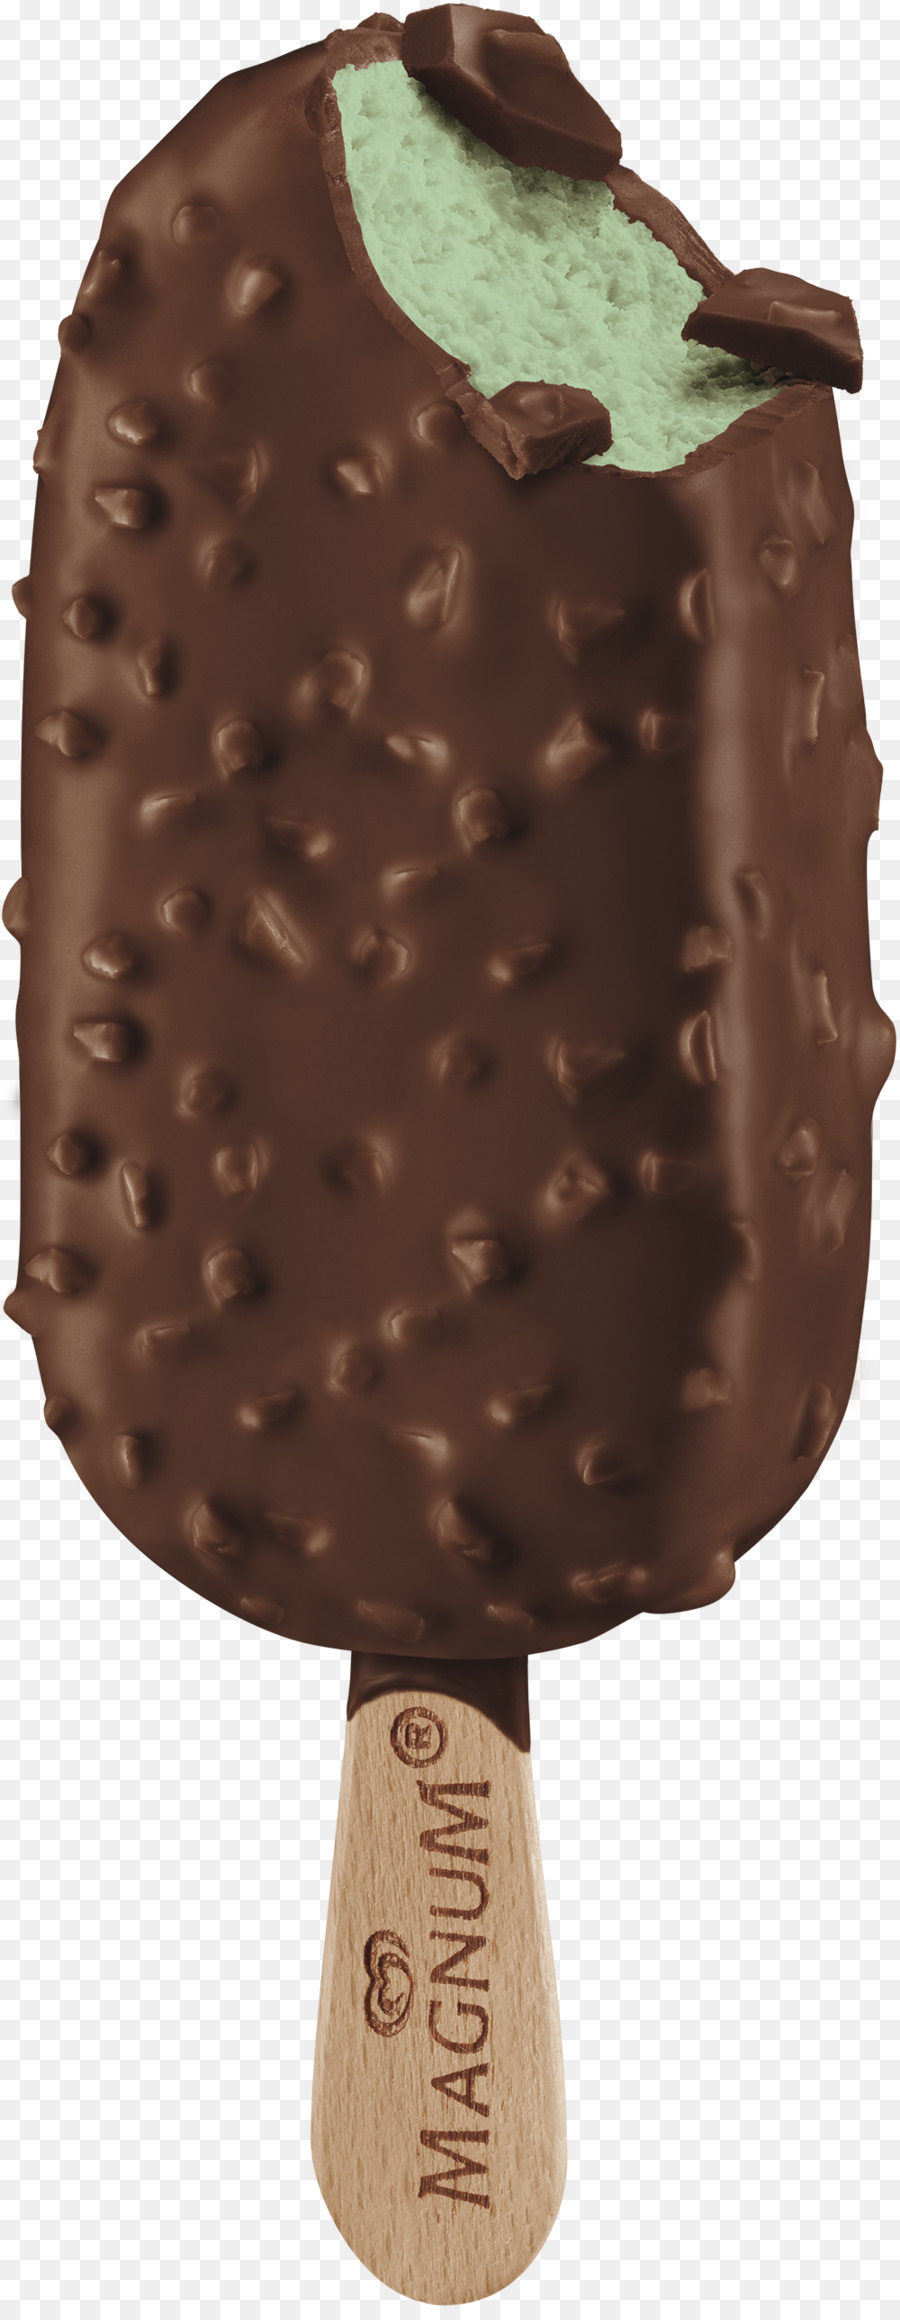 Gelato al cioccolato Morte per Praline al Cioccolato Fondente - gelato